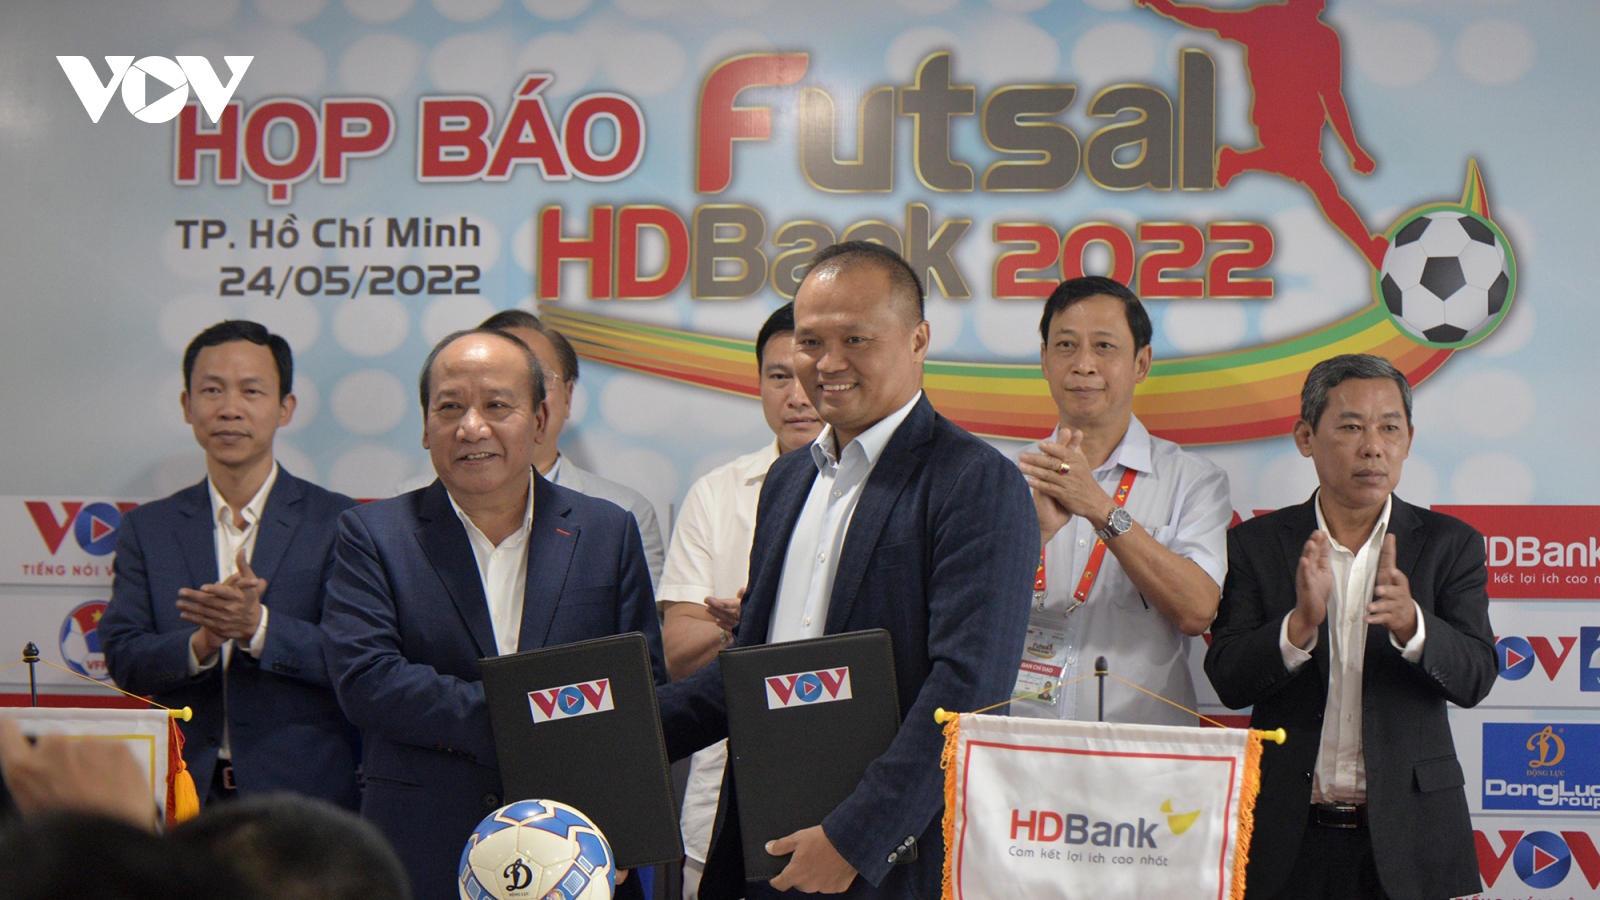 Họp báo công bố giải Futsal HDBank vô địch quốc gia và cup quốc gia 2022